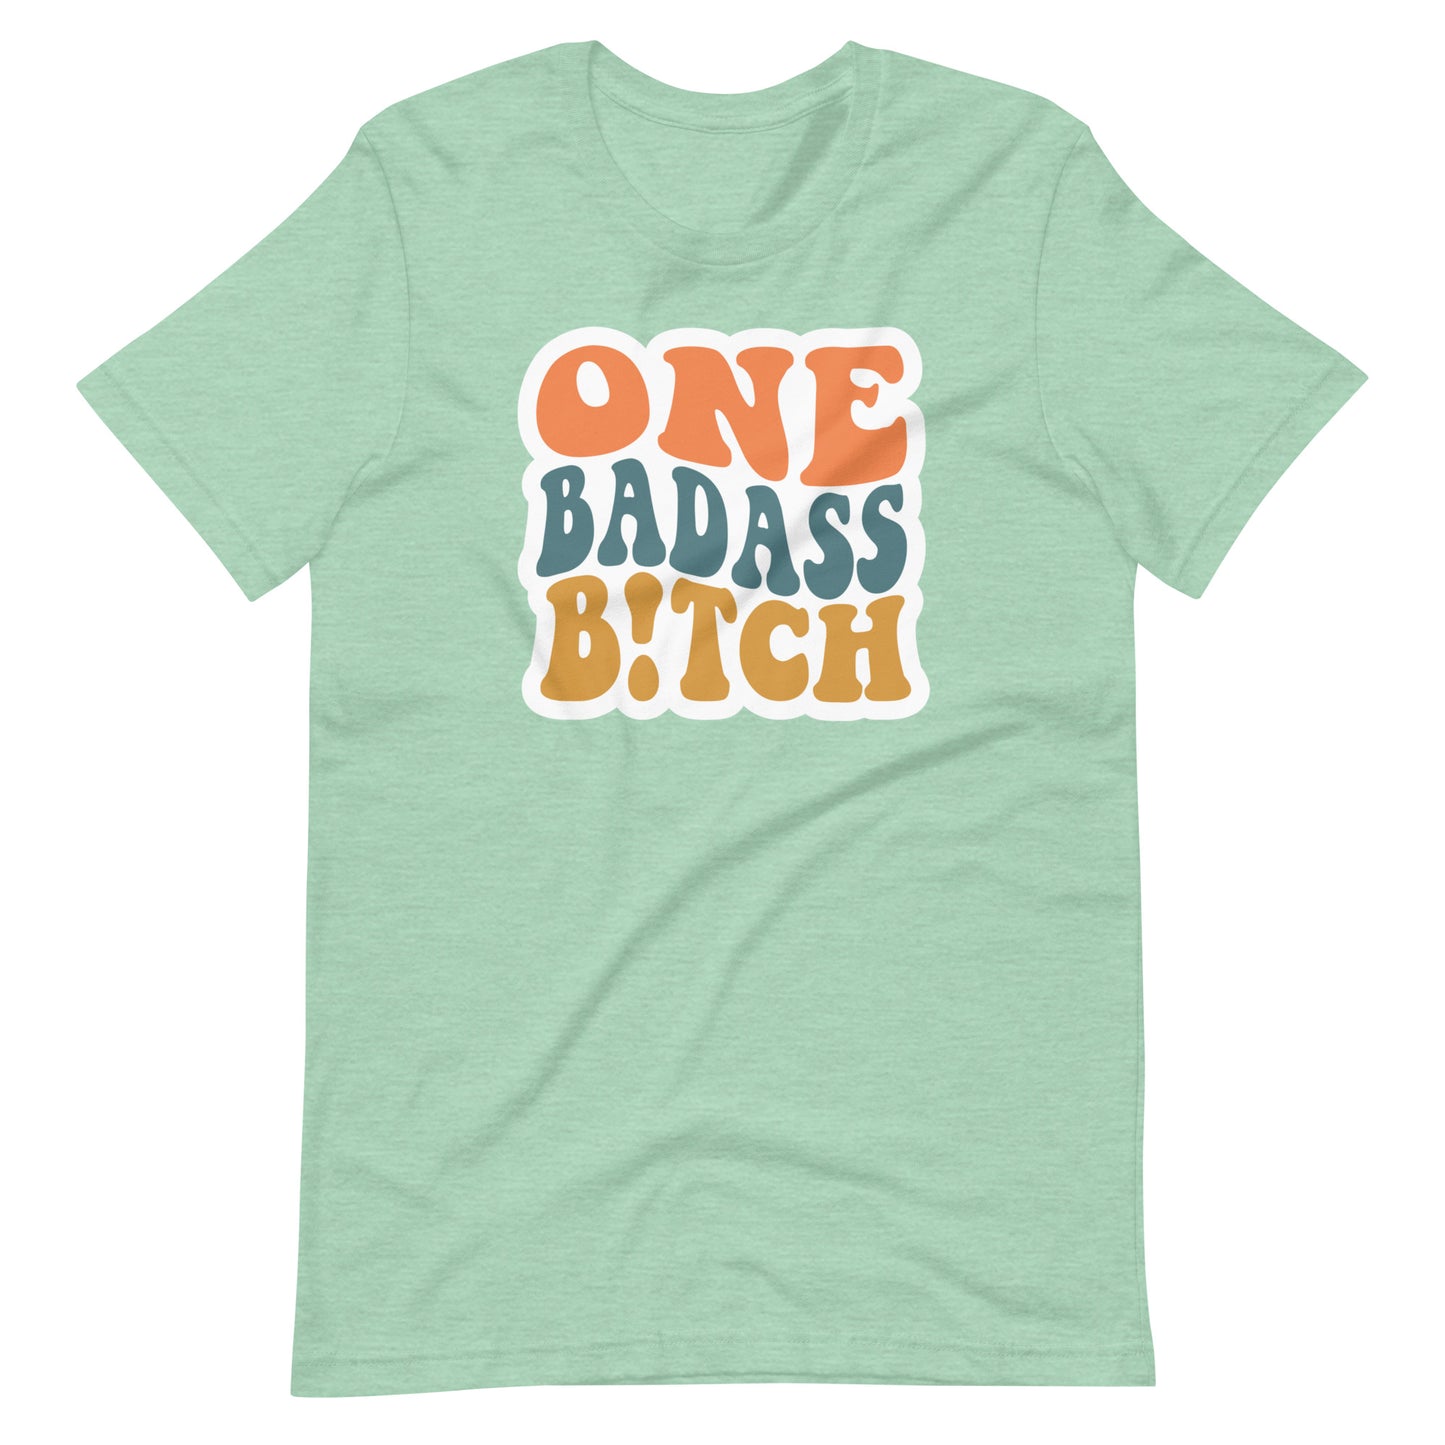 One Badass B!tch T-Shirt